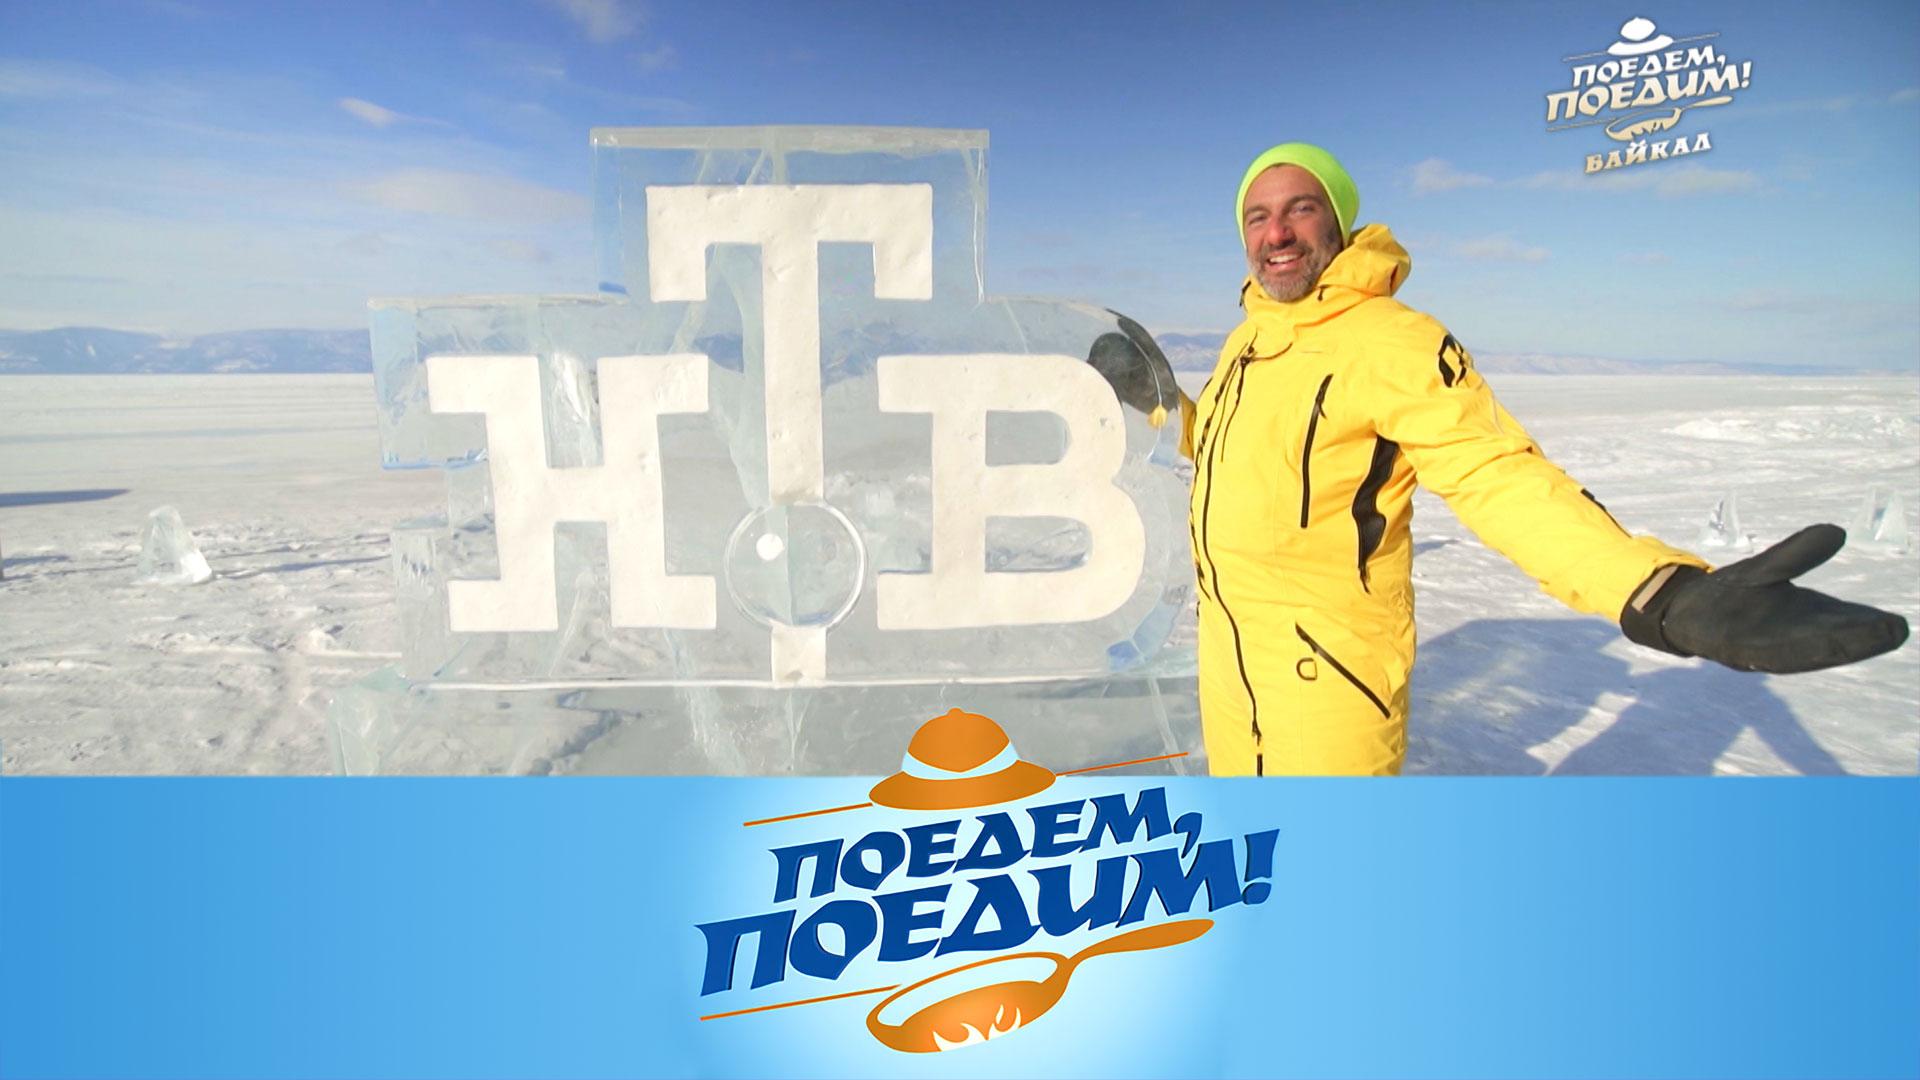 Байкал: дрифт и пикник на льду, икра из рыжиков и блюда сибирской кухни | «Поедем, поедим!»